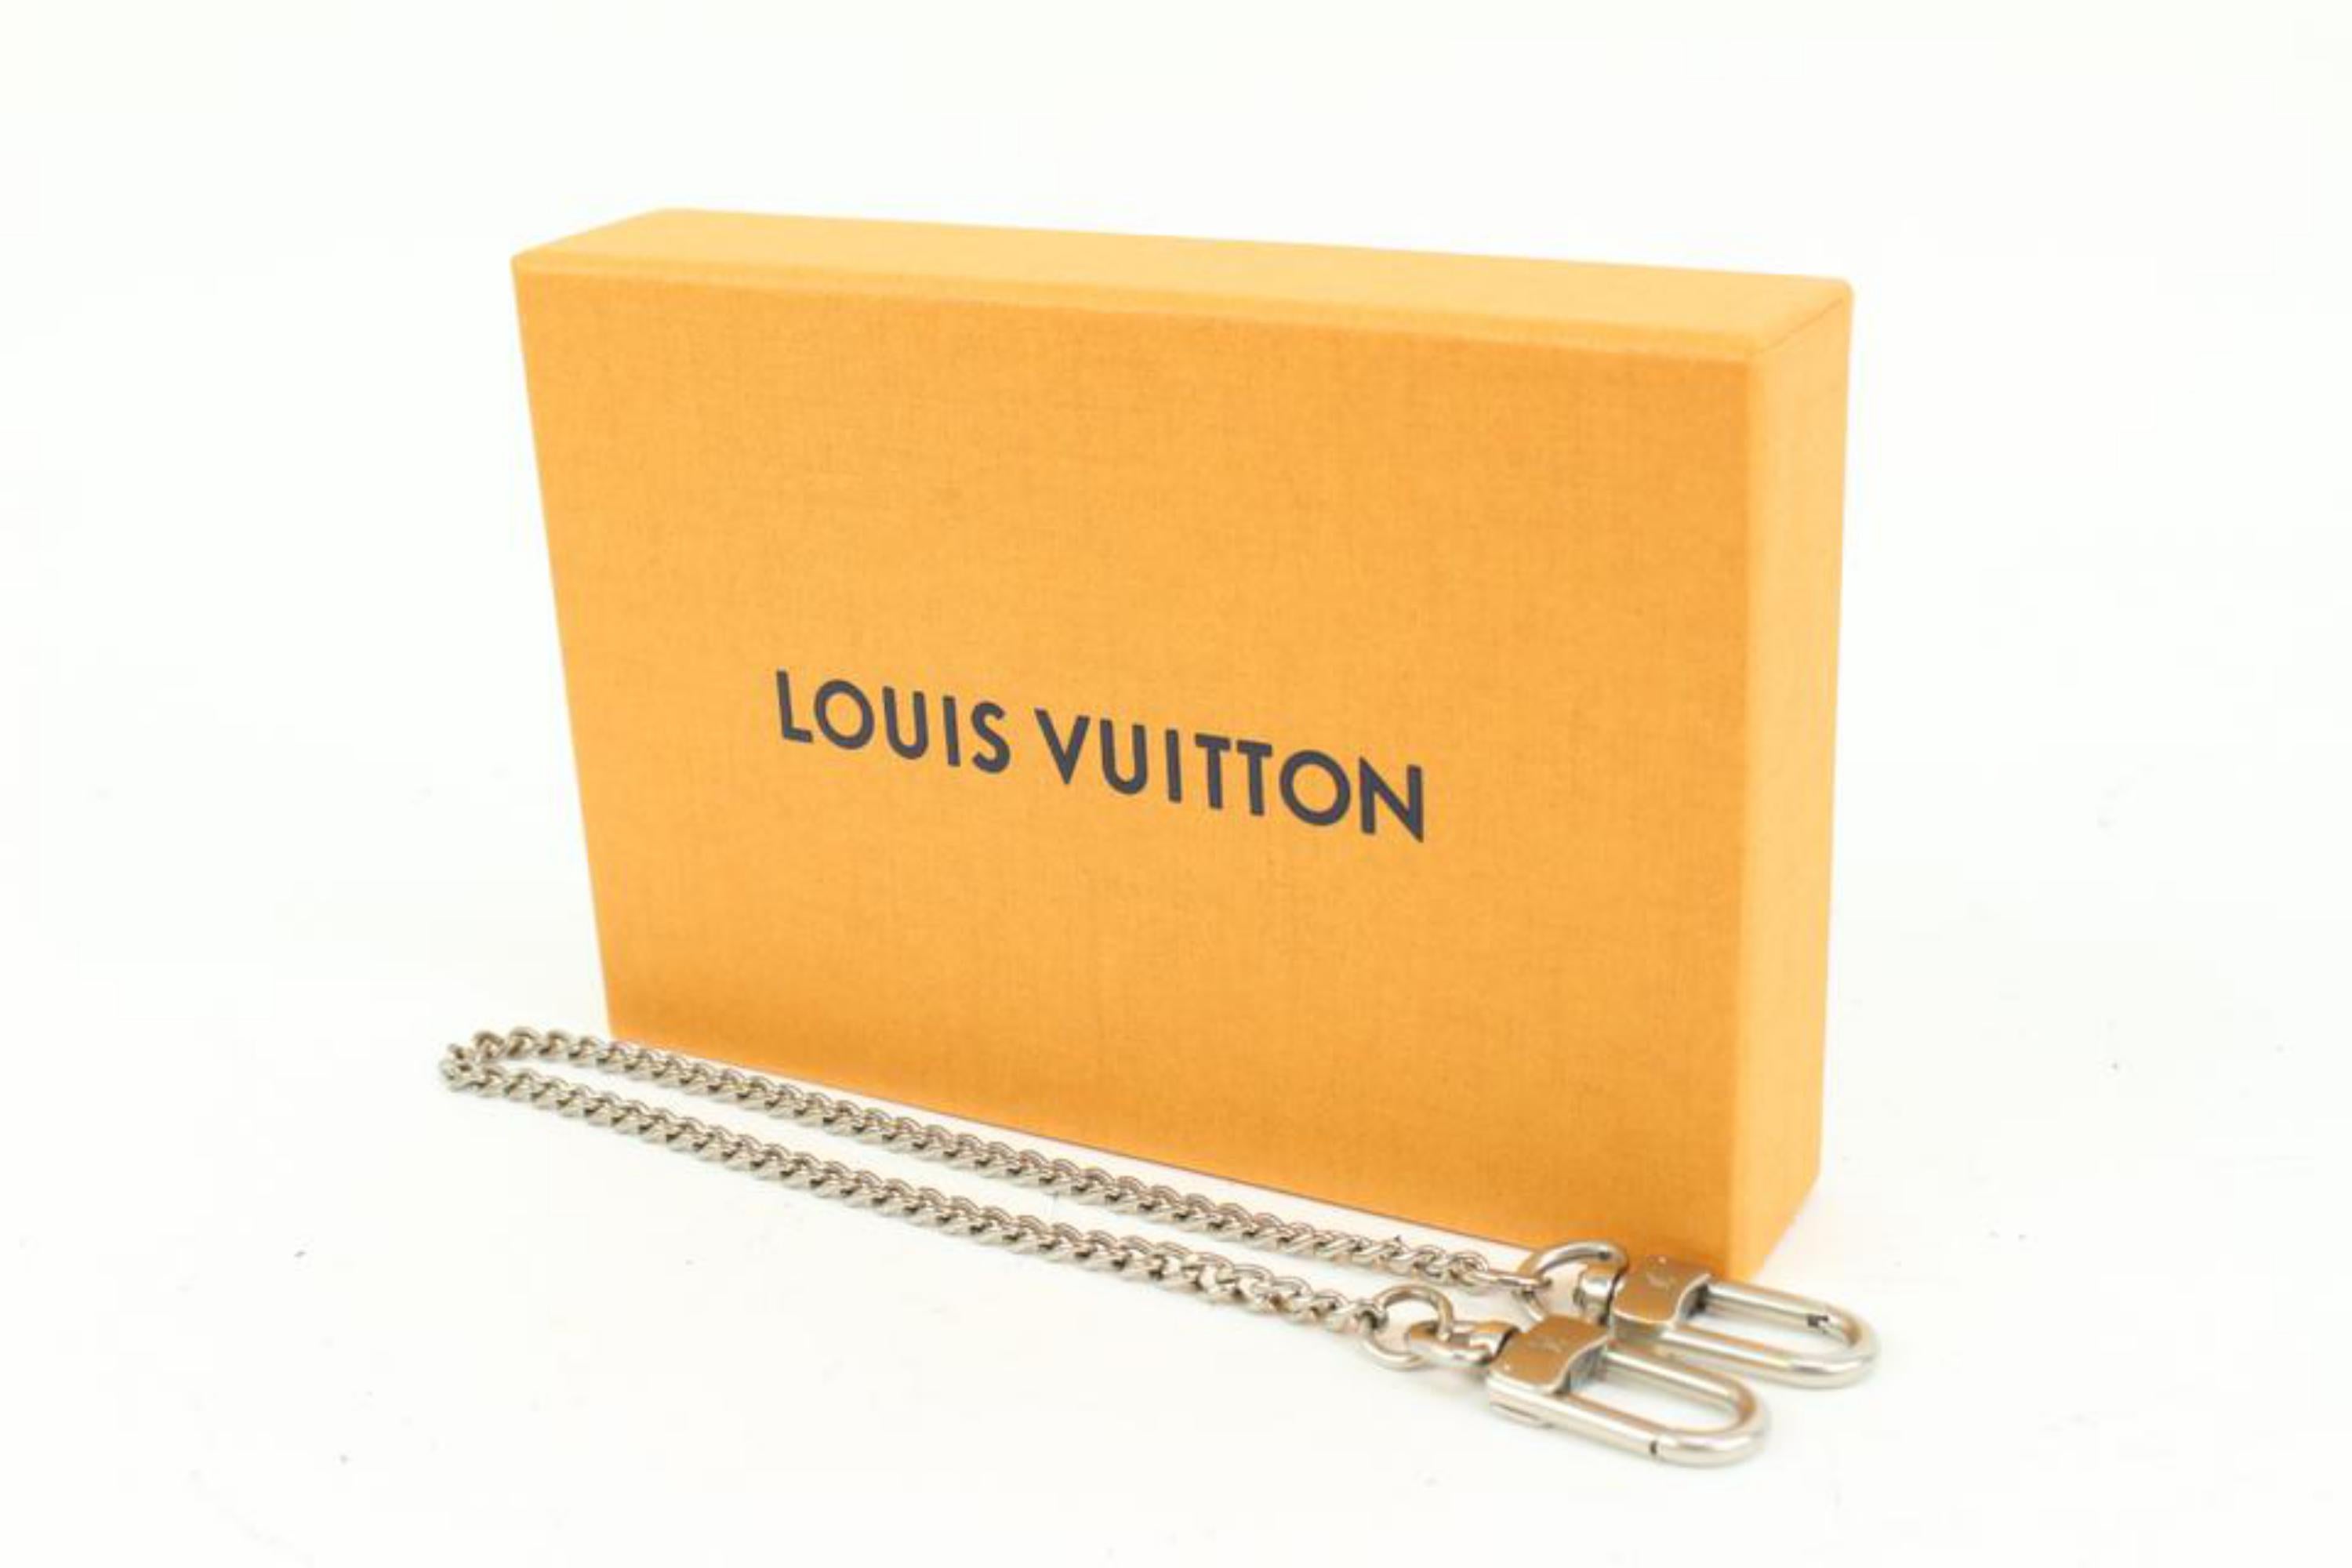 Louis Vuitton Silver Chain Strap or Pochette Extender 44lv421s
Measurements: Length:  13